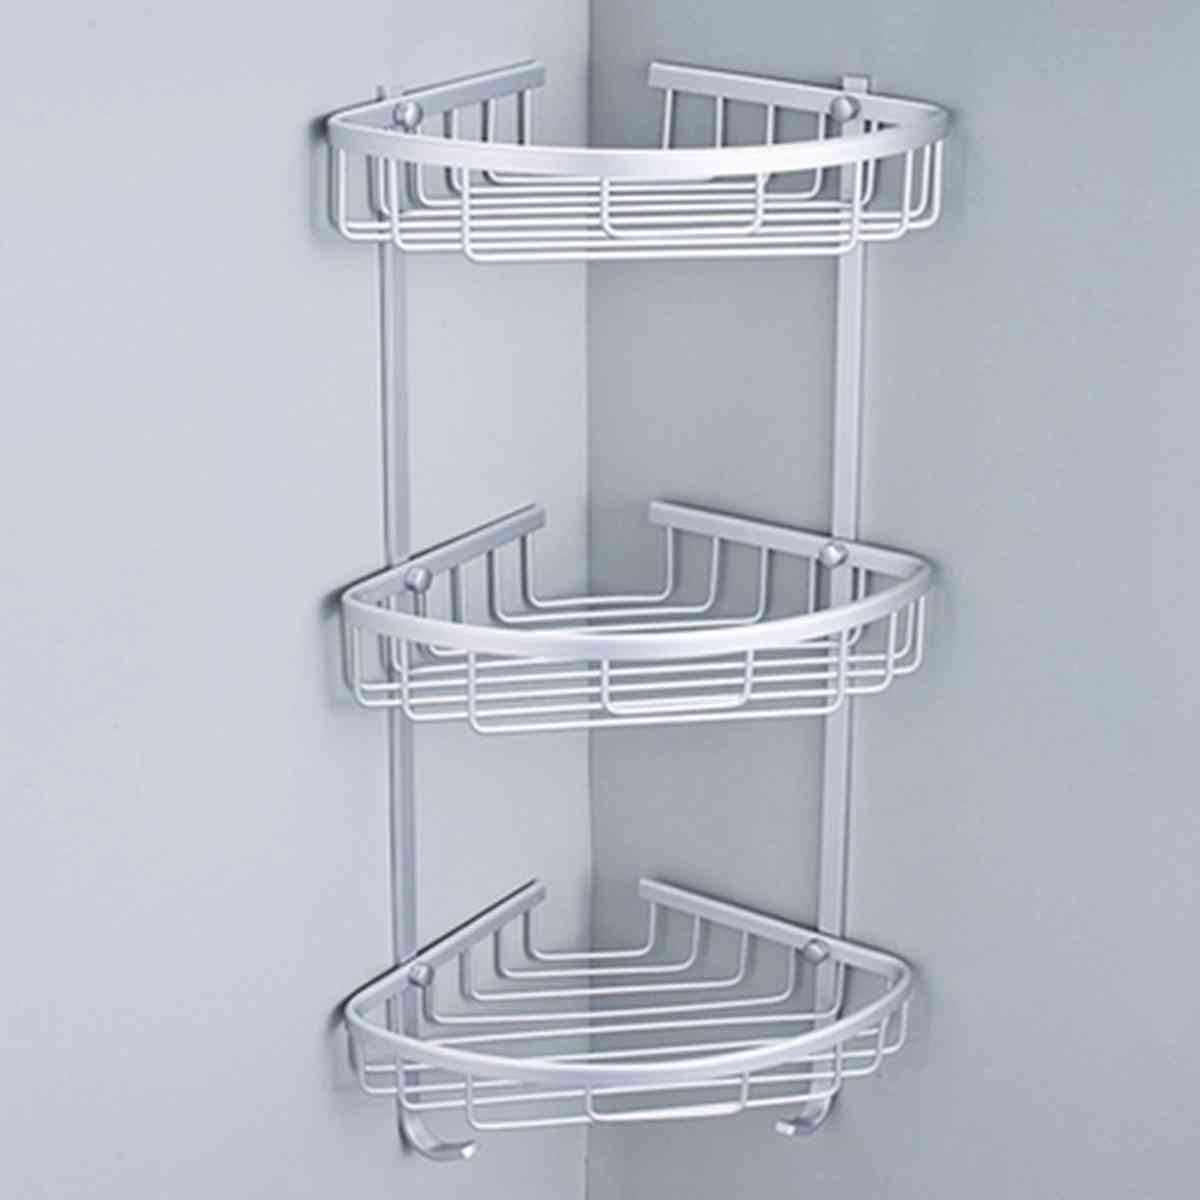 Kylpyhuoneen lävistysvapaa alumiininen kolmion muotoinen teline